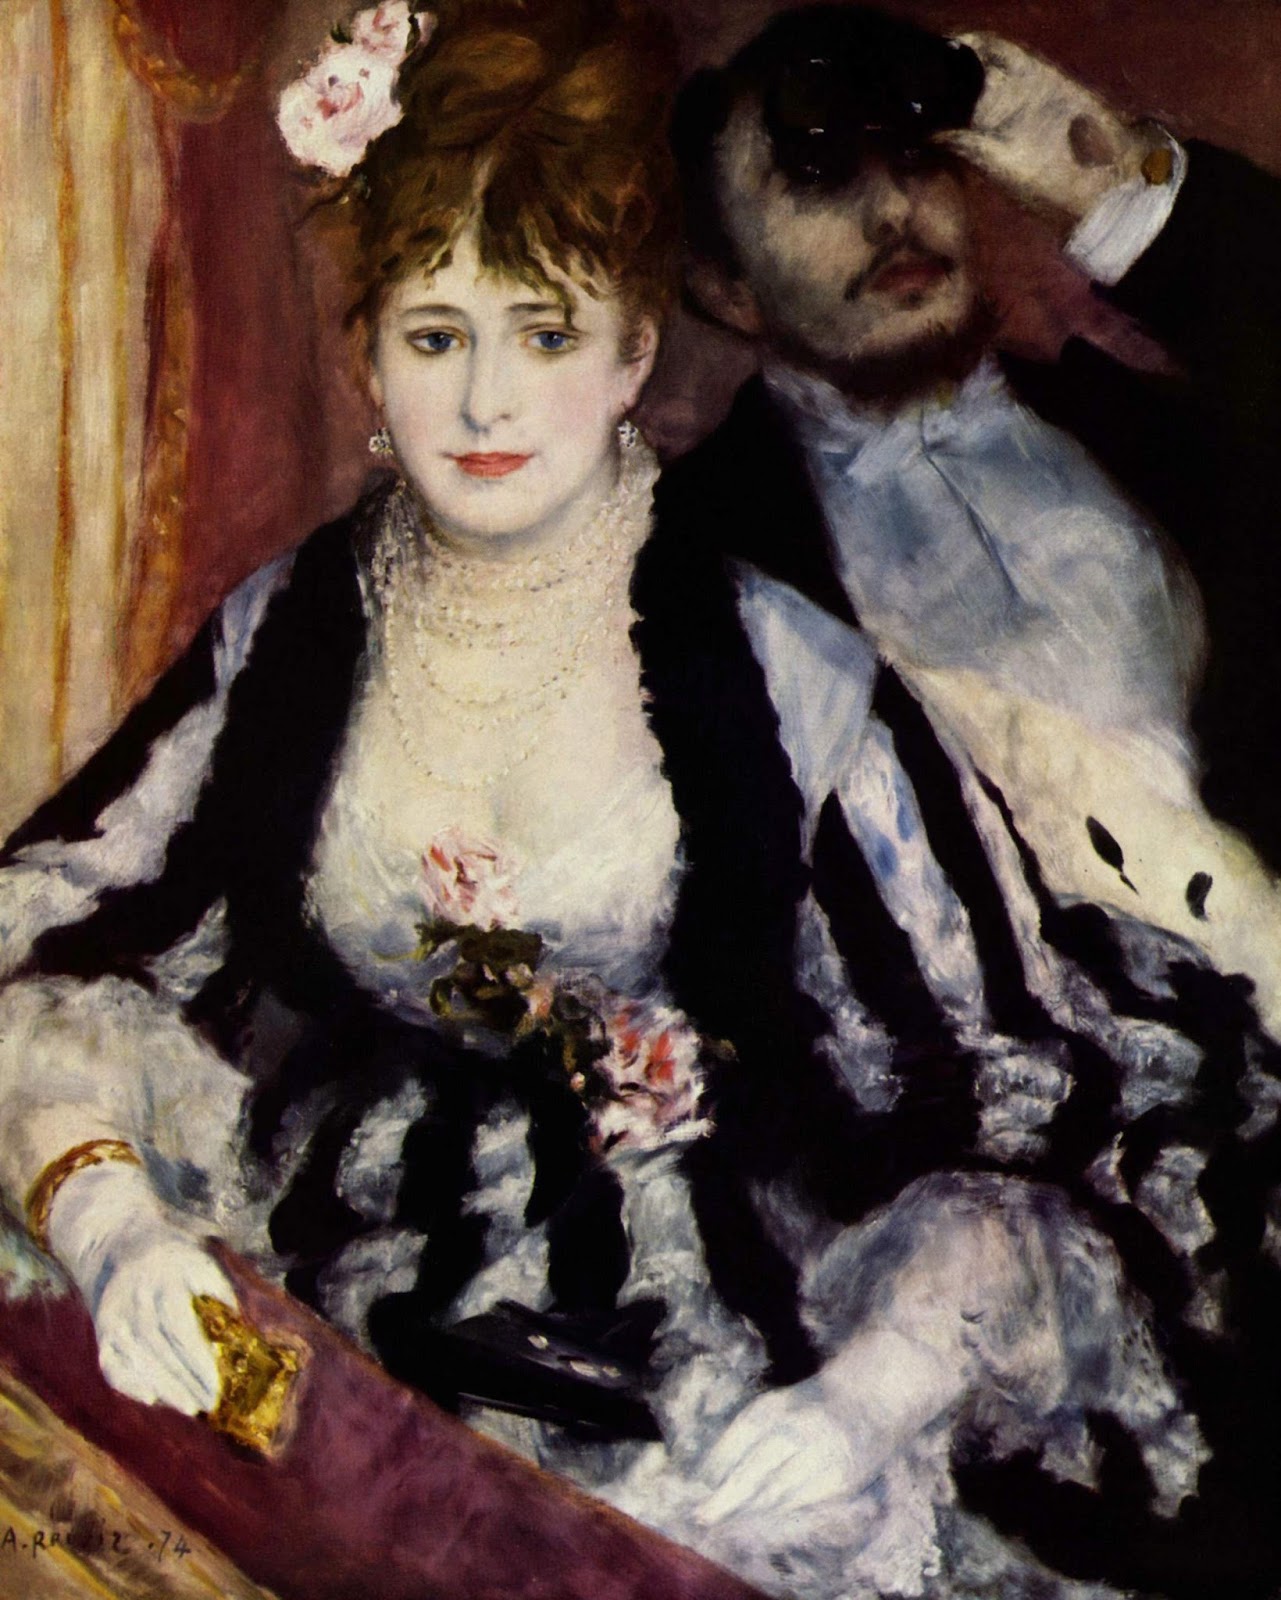 Pierre+Auguste+Renoir-1841-1-19 (234).jpg